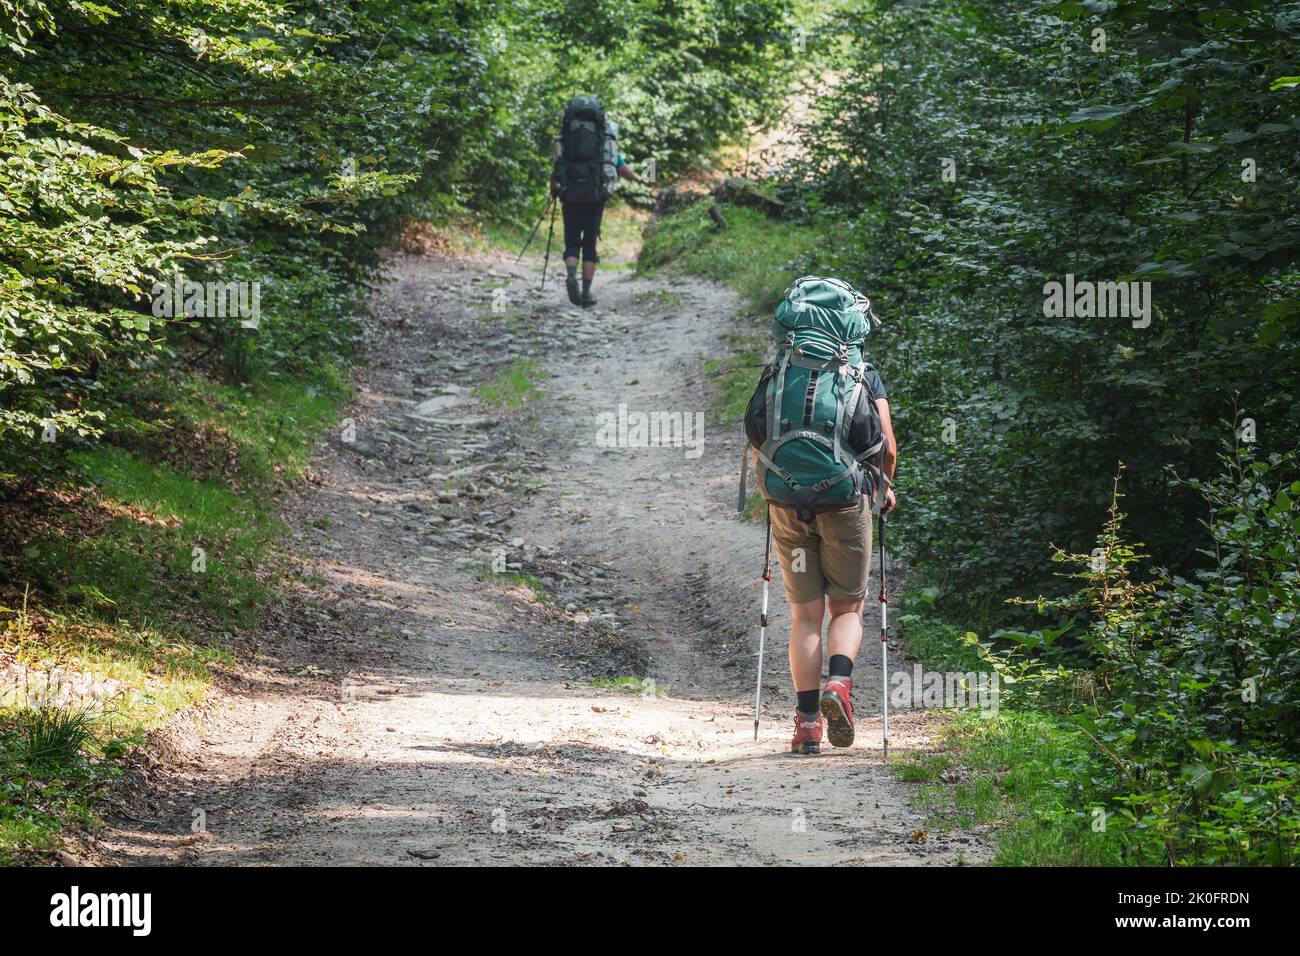 Escursionisti sul sentiero. Due escursionisti con zaini e bastoni vanno in salita sul sentiero roccioso nella foresta. Focalizzazione selettiva sul primo escursionista Foto Stock